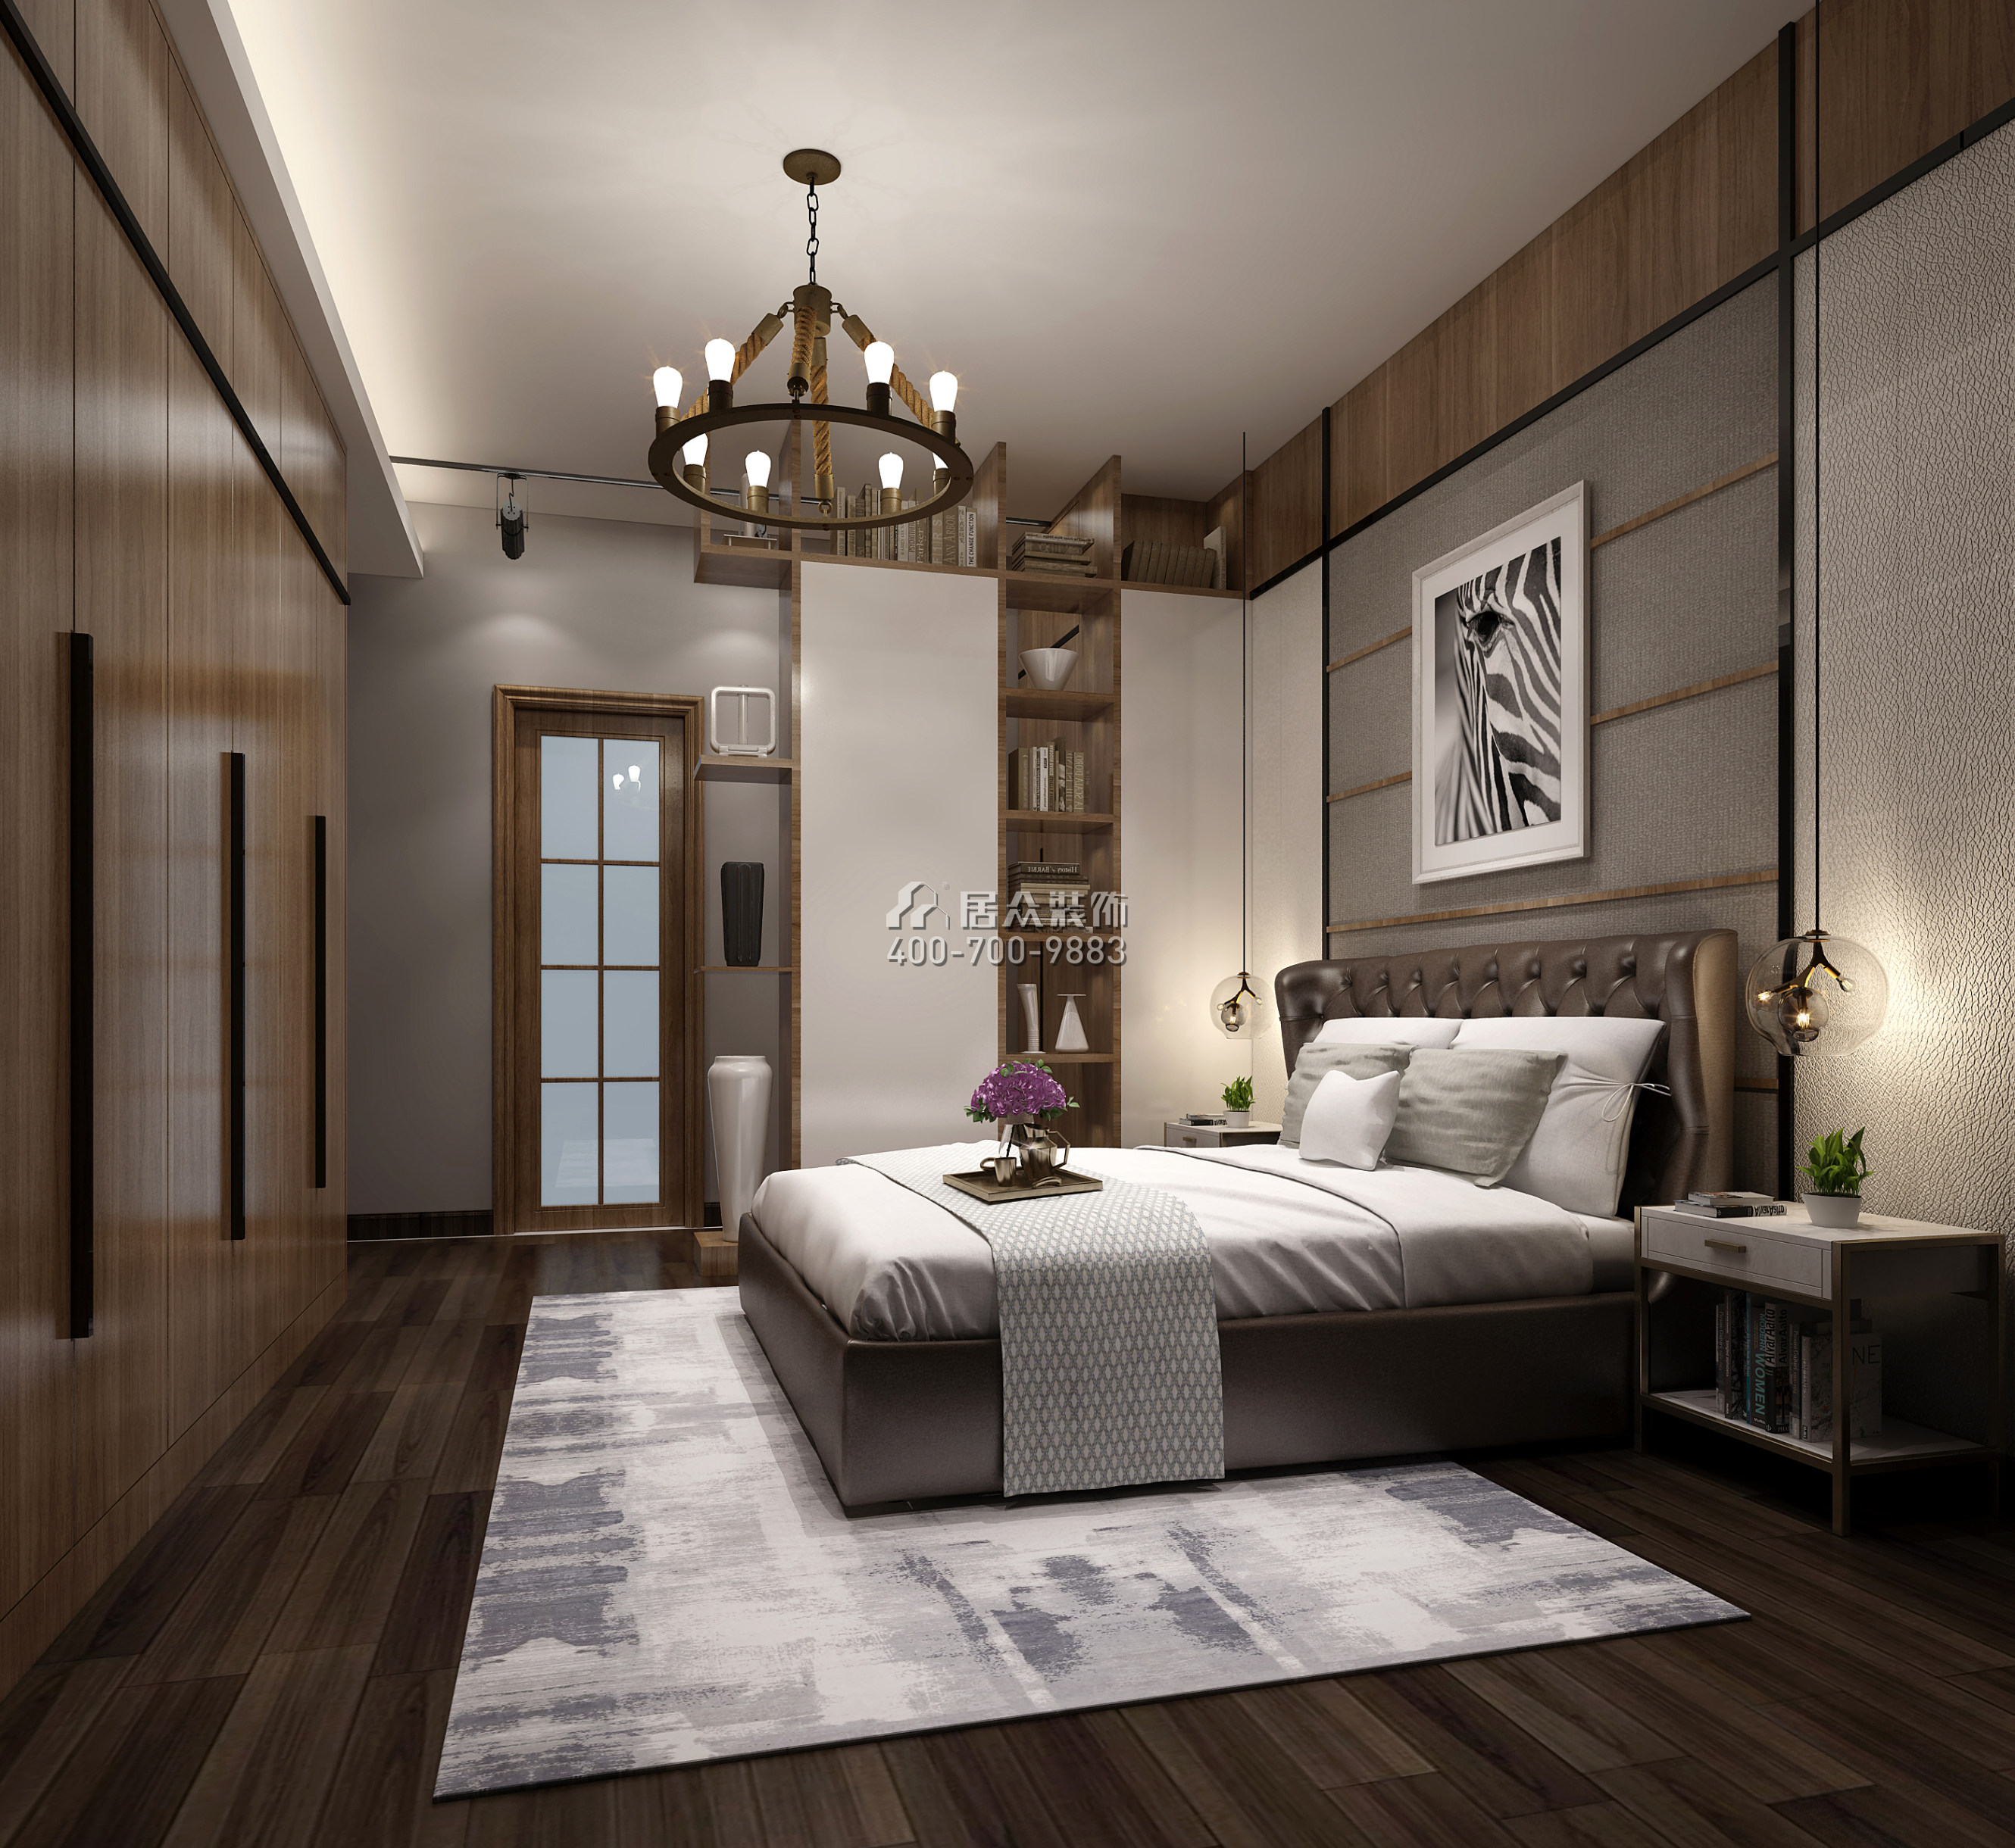 正兆景嘉园146平方米现代简约风格平层户型卧室装修效果图